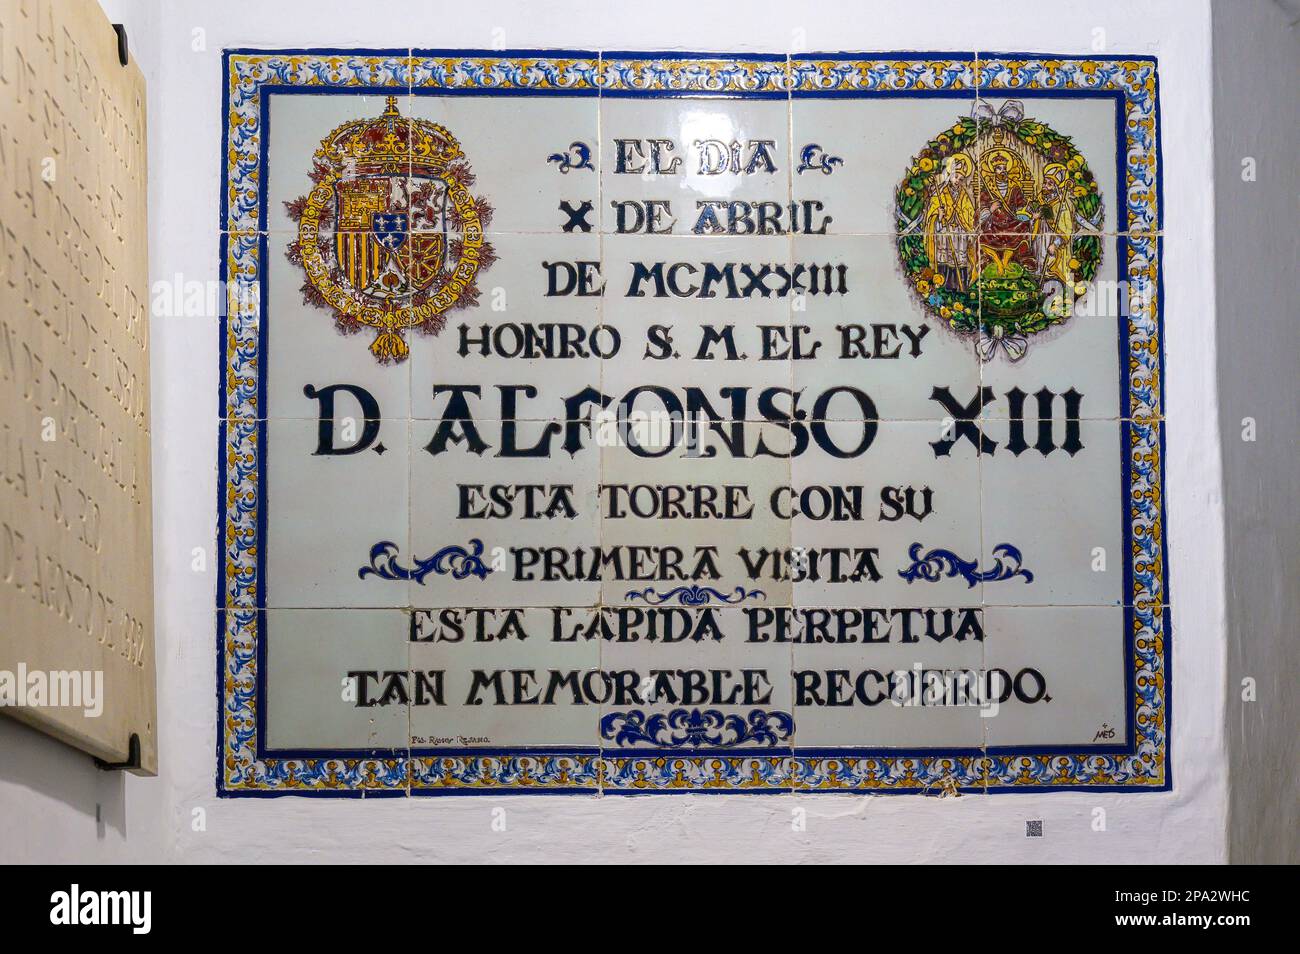 Keramikfliesen-historische Plakette zum ersten Besuch von D. Alfonso XIII Auf Spanisch heißt das Gebäude Torre del Oro. Stockfoto